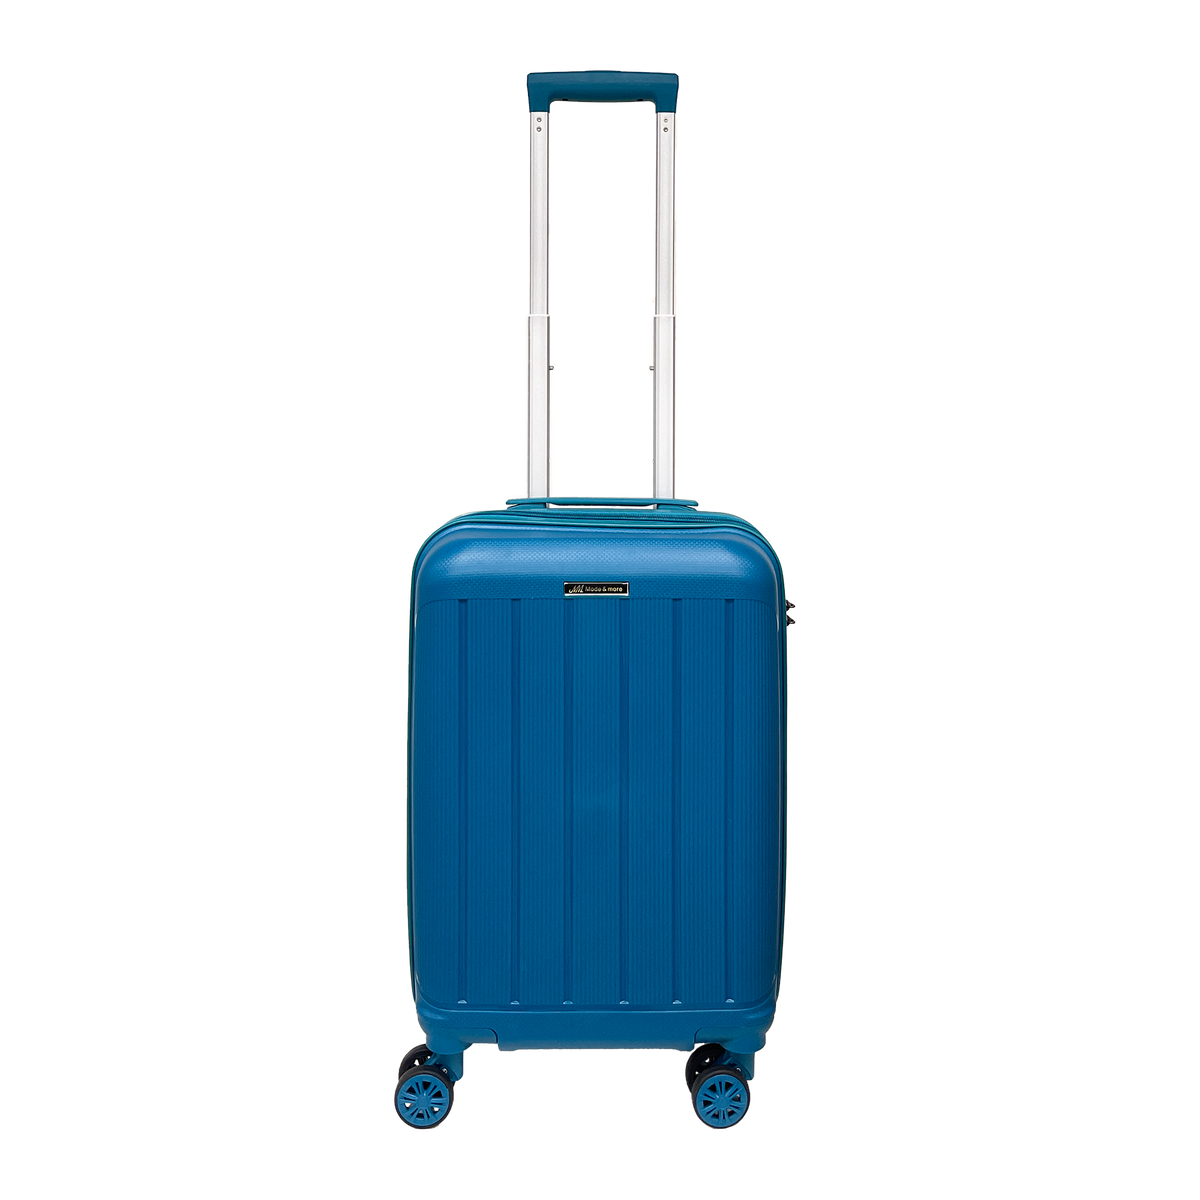 Kevyt, pehmeä polypropeenikäsimatkatavara 55x36x25cm, jossa on TSA-lukko, huippulaatuinen erittäin kevyt matkalaukku